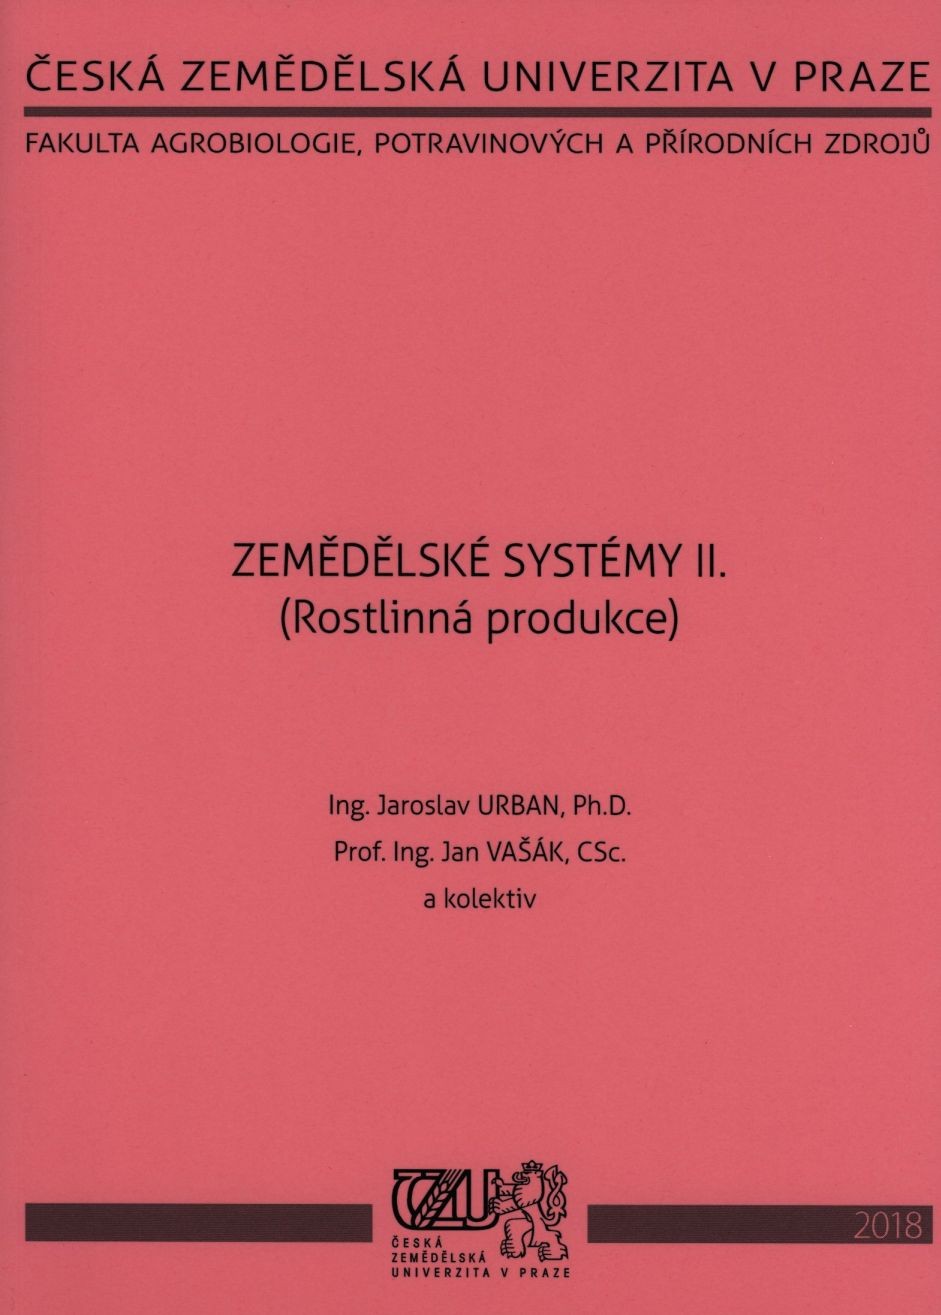 Zemědělské systémy II. (Rostlinná produkce), 861